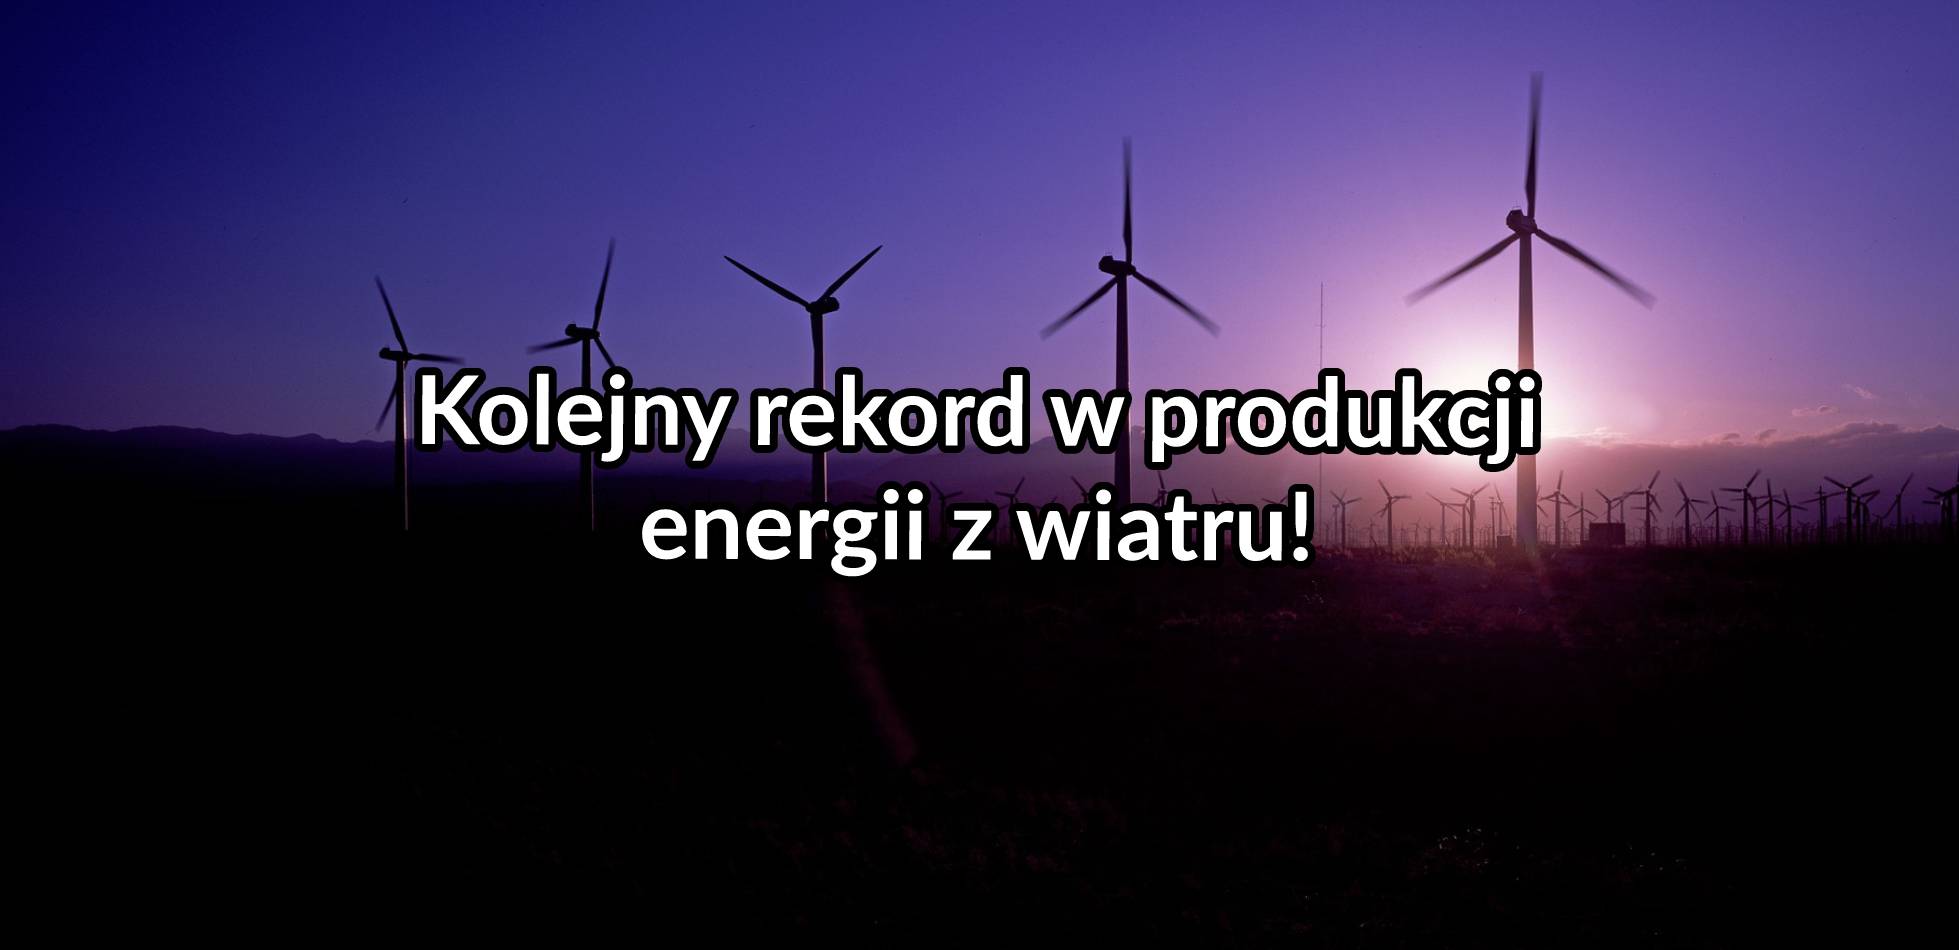 Kolejny rekord w produkcji energii z wiatru w Polsce!